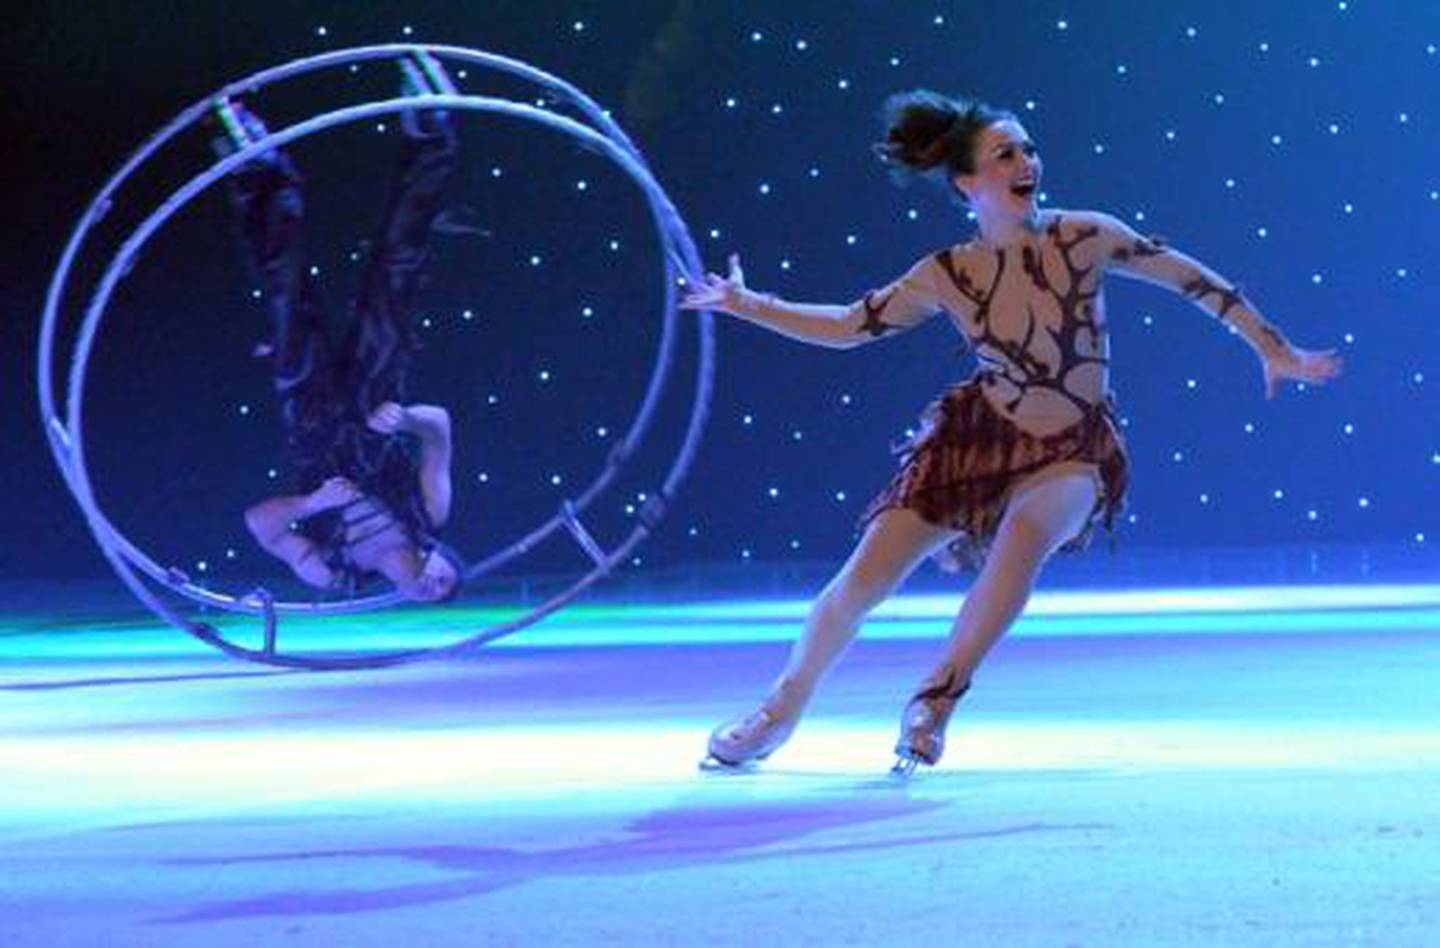 Ice show 'Cirque de Glace' will take place at Dubai Opera in December. Courtesy Dubai Opera